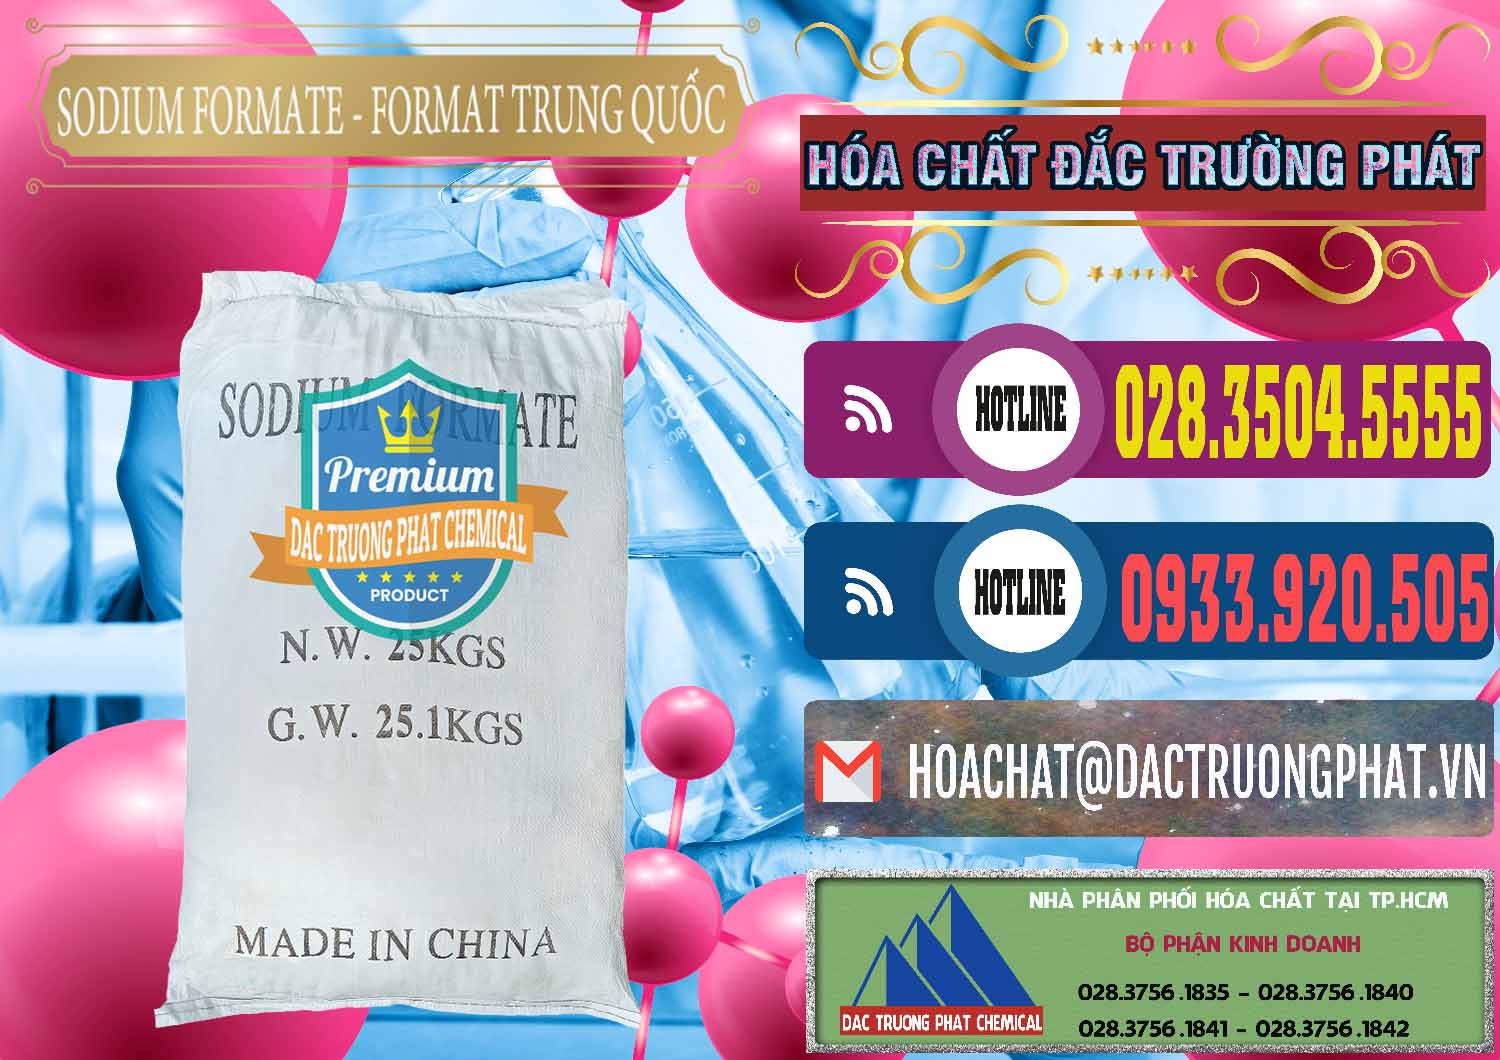 Cty bán ( cung cấp ) Sodium Formate - Natri Format Trung Quốc China - 0142 - Nơi bán ( cung cấp ) hóa chất tại TP.HCM - muabanhoachat.com.vn